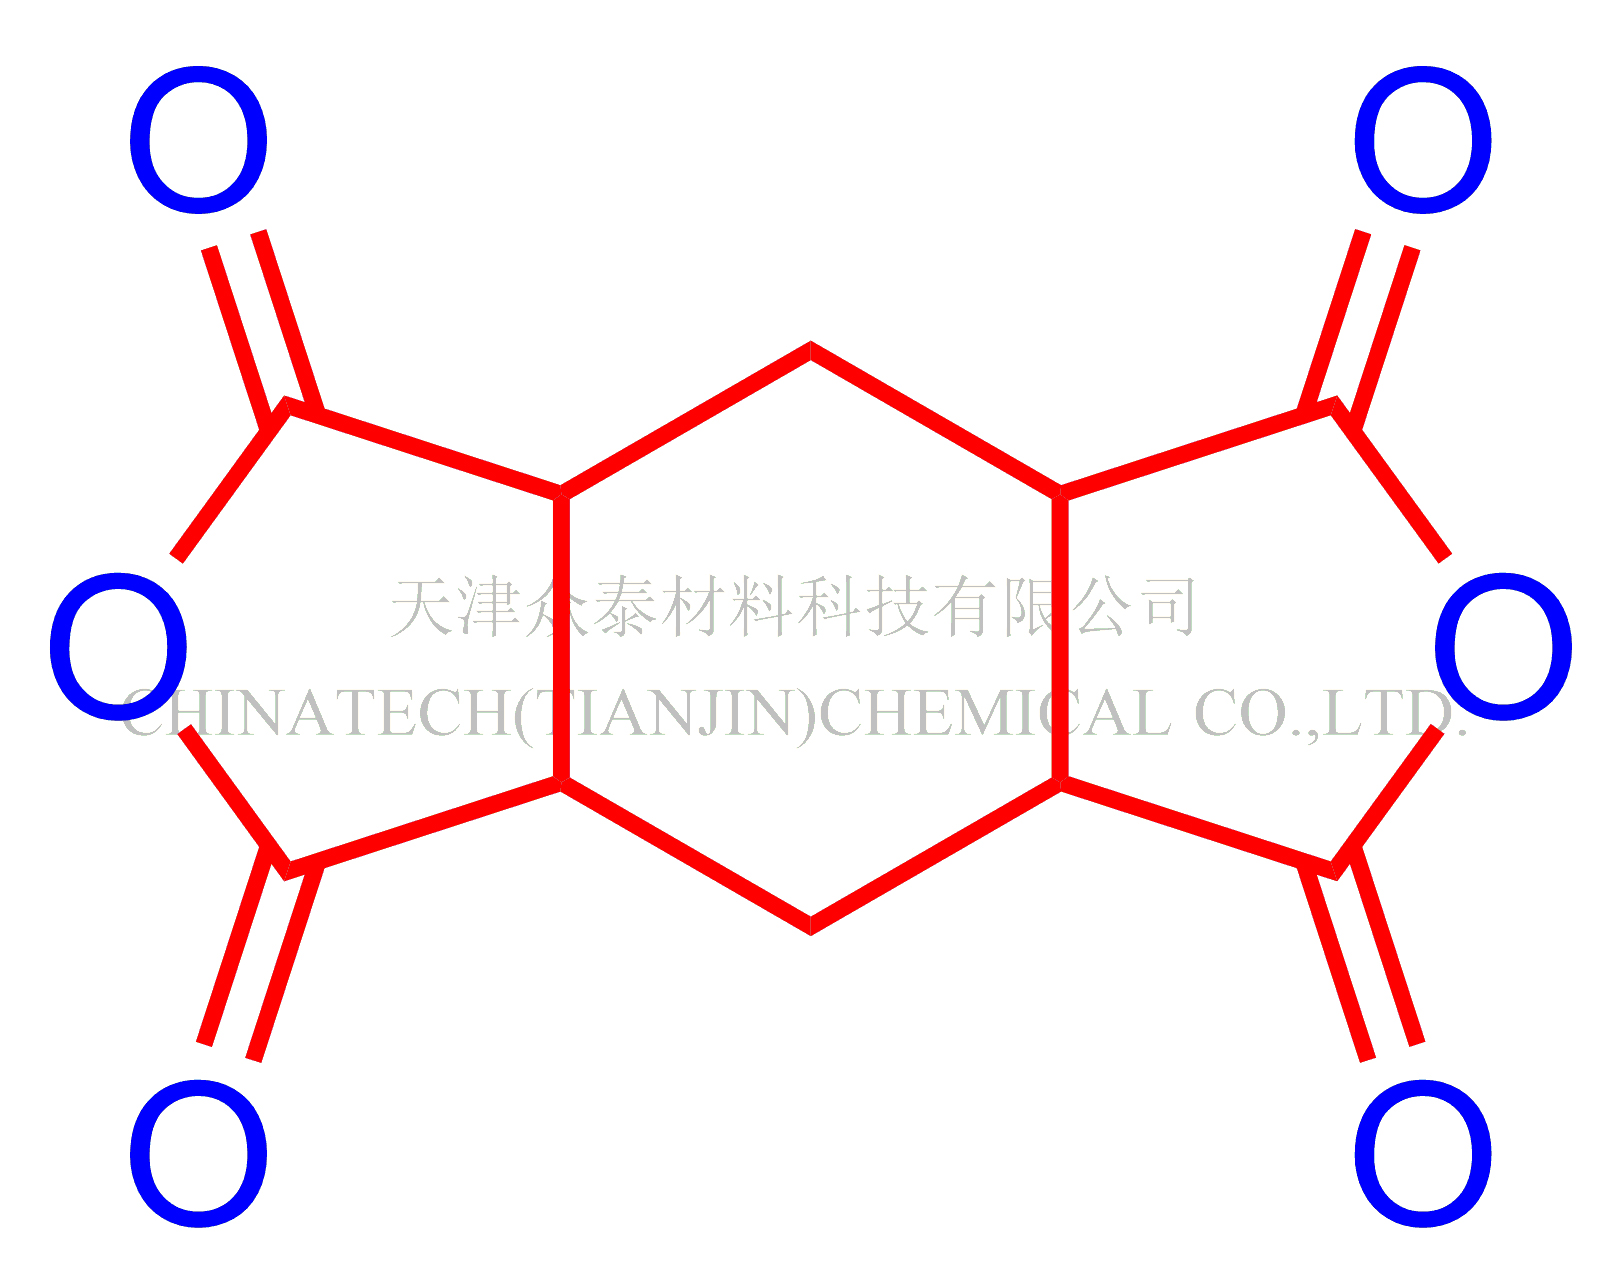 氢化均苯四甲酸二酐(HPMDA） 产品图片